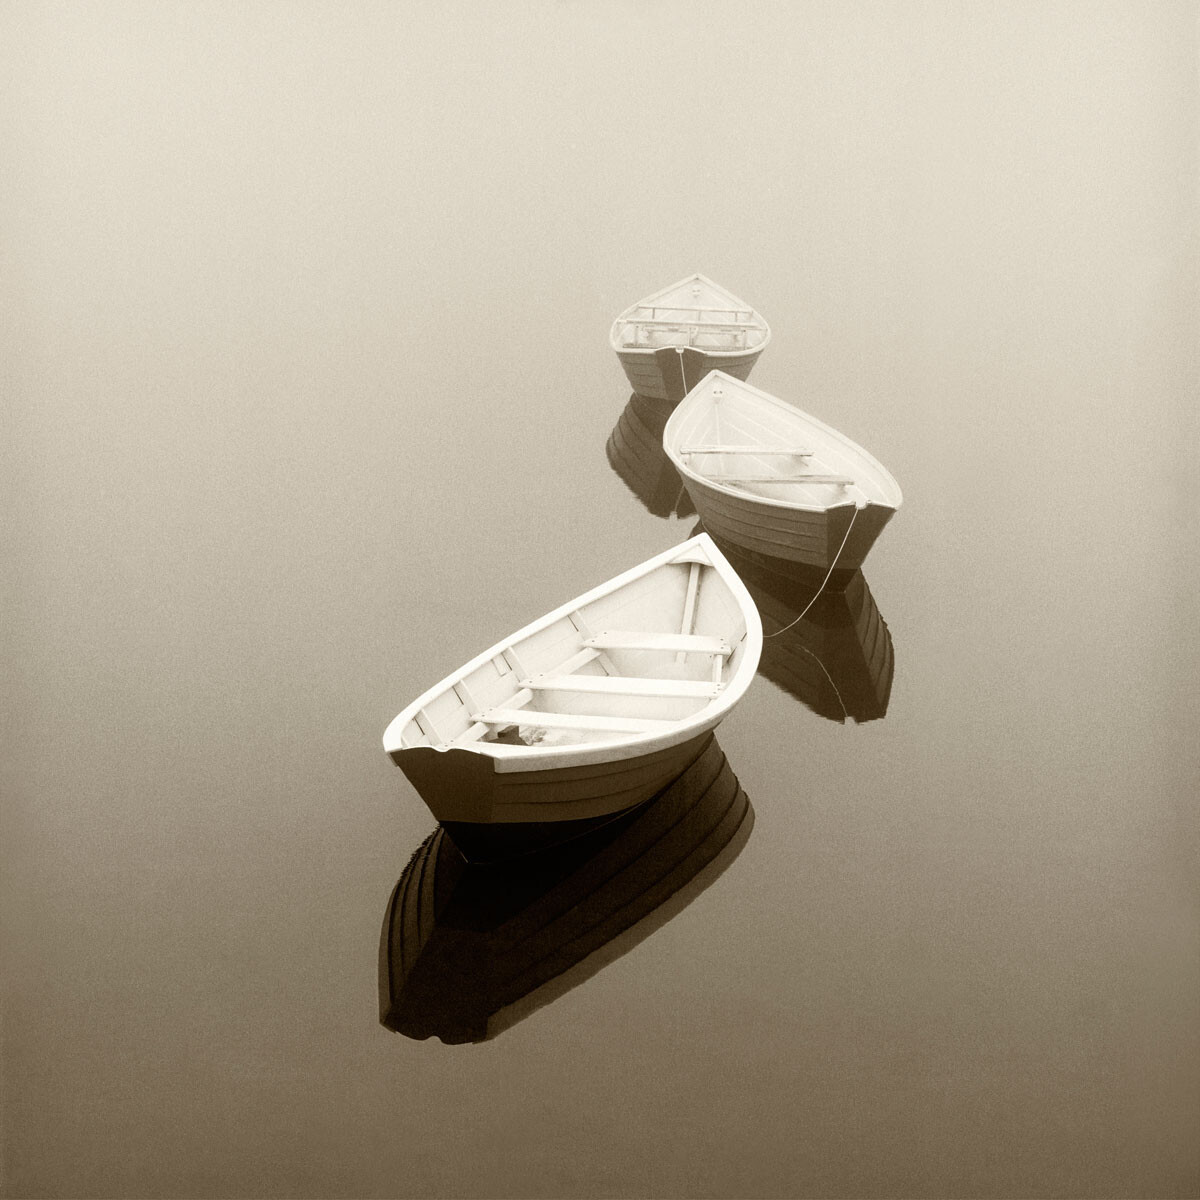 Лодки в тишине. Фотограф Майкл Кан